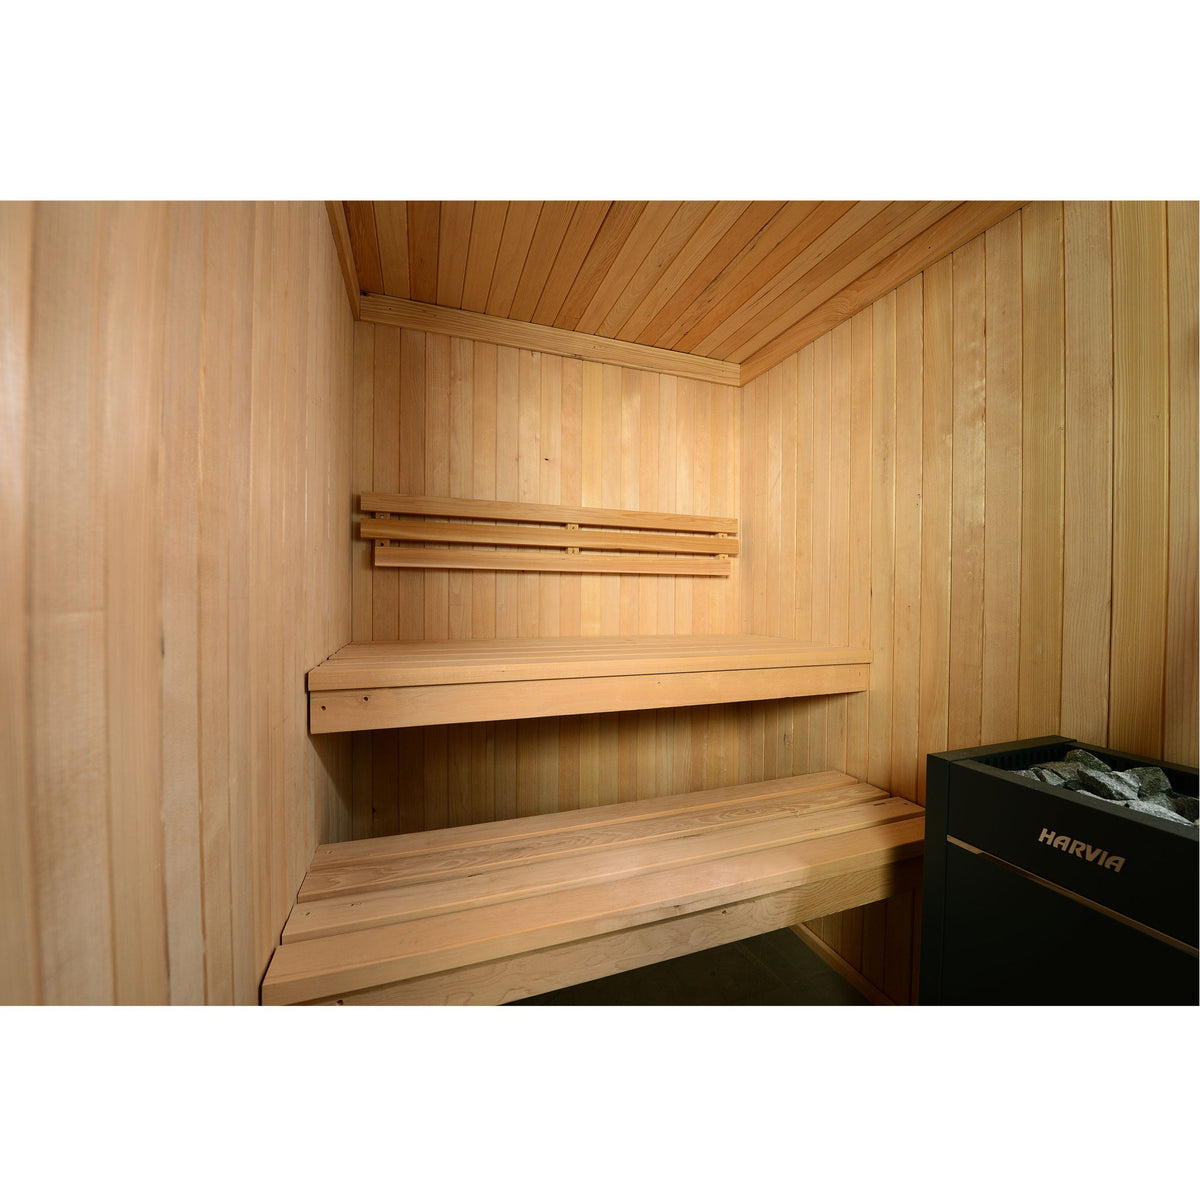 Almost Heaven Serena 3-Person Indoor Sauna-Traditional Saunas-Nordica Sauna